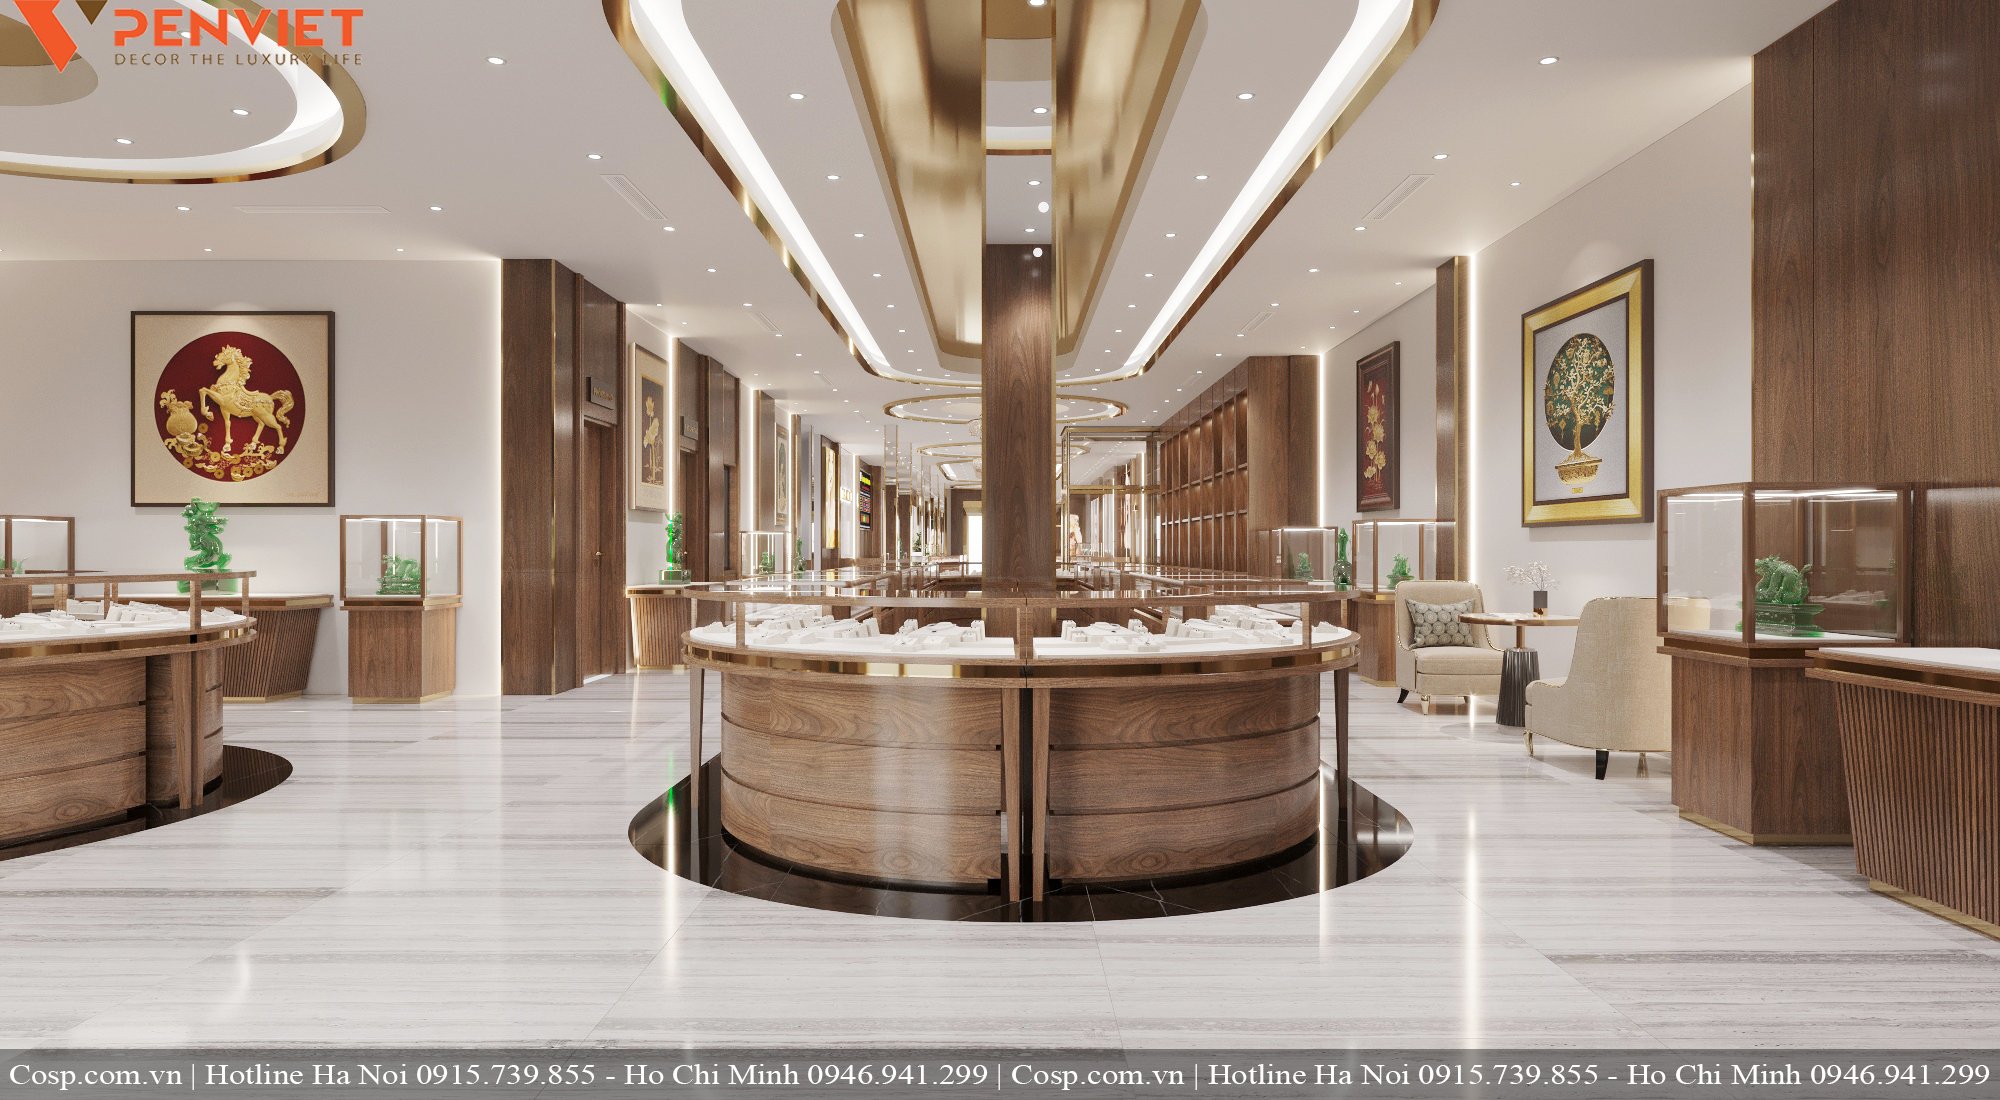 Thiết kế tiệm vàng bố trí tủ thấp ở vị trí trung tâm giúp thu hút sự chú ý của khách hàng